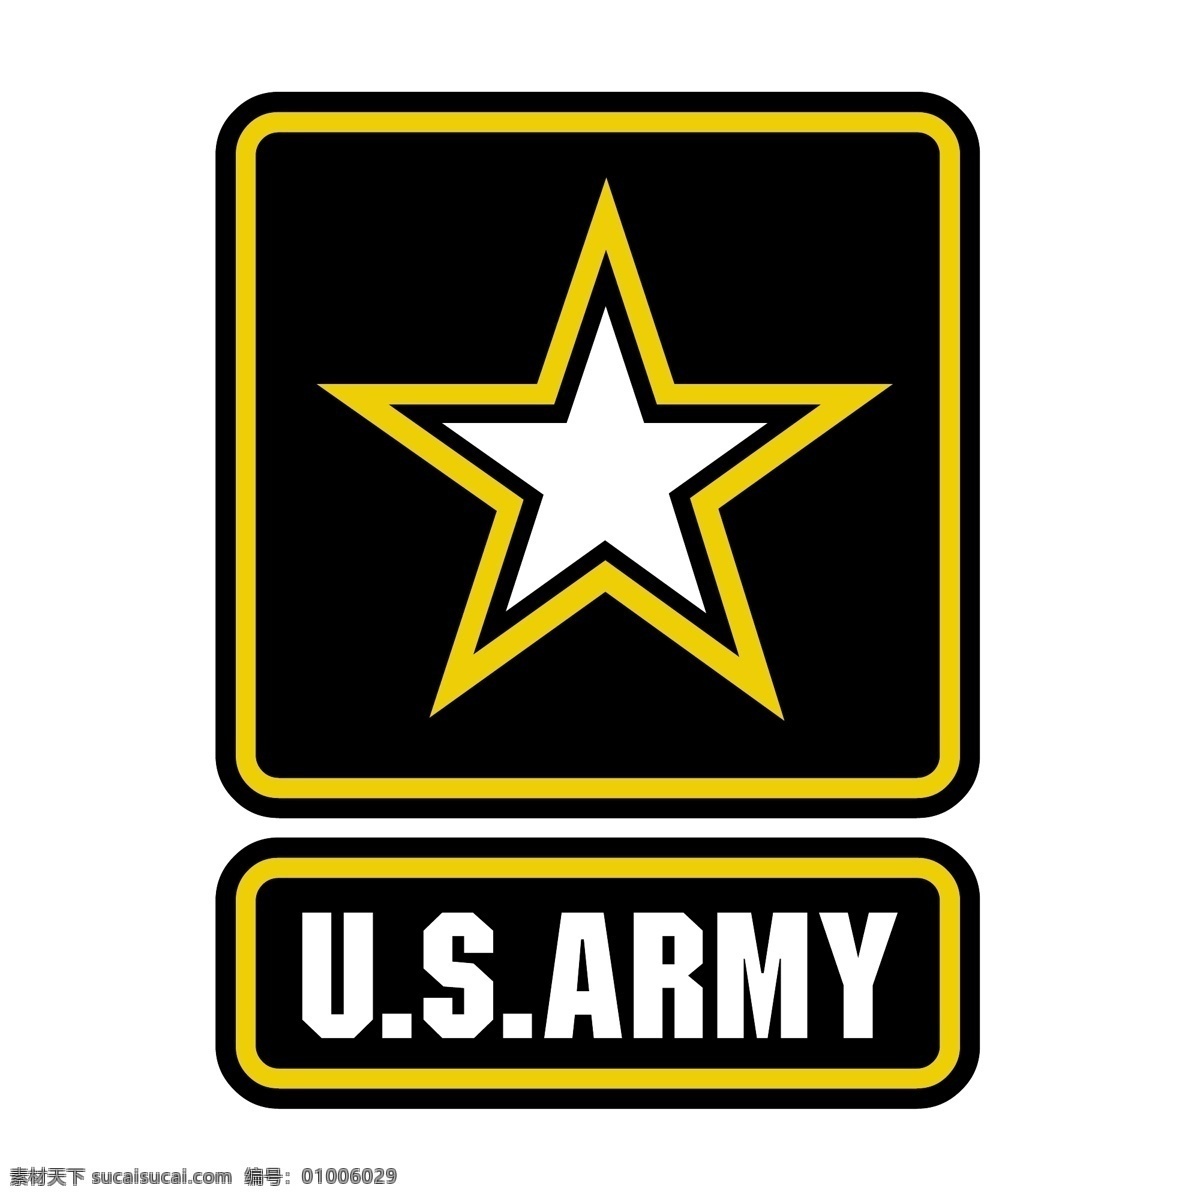 我们 军队 免费 美国 陆军 标志 标识 psd源文件 logo设计